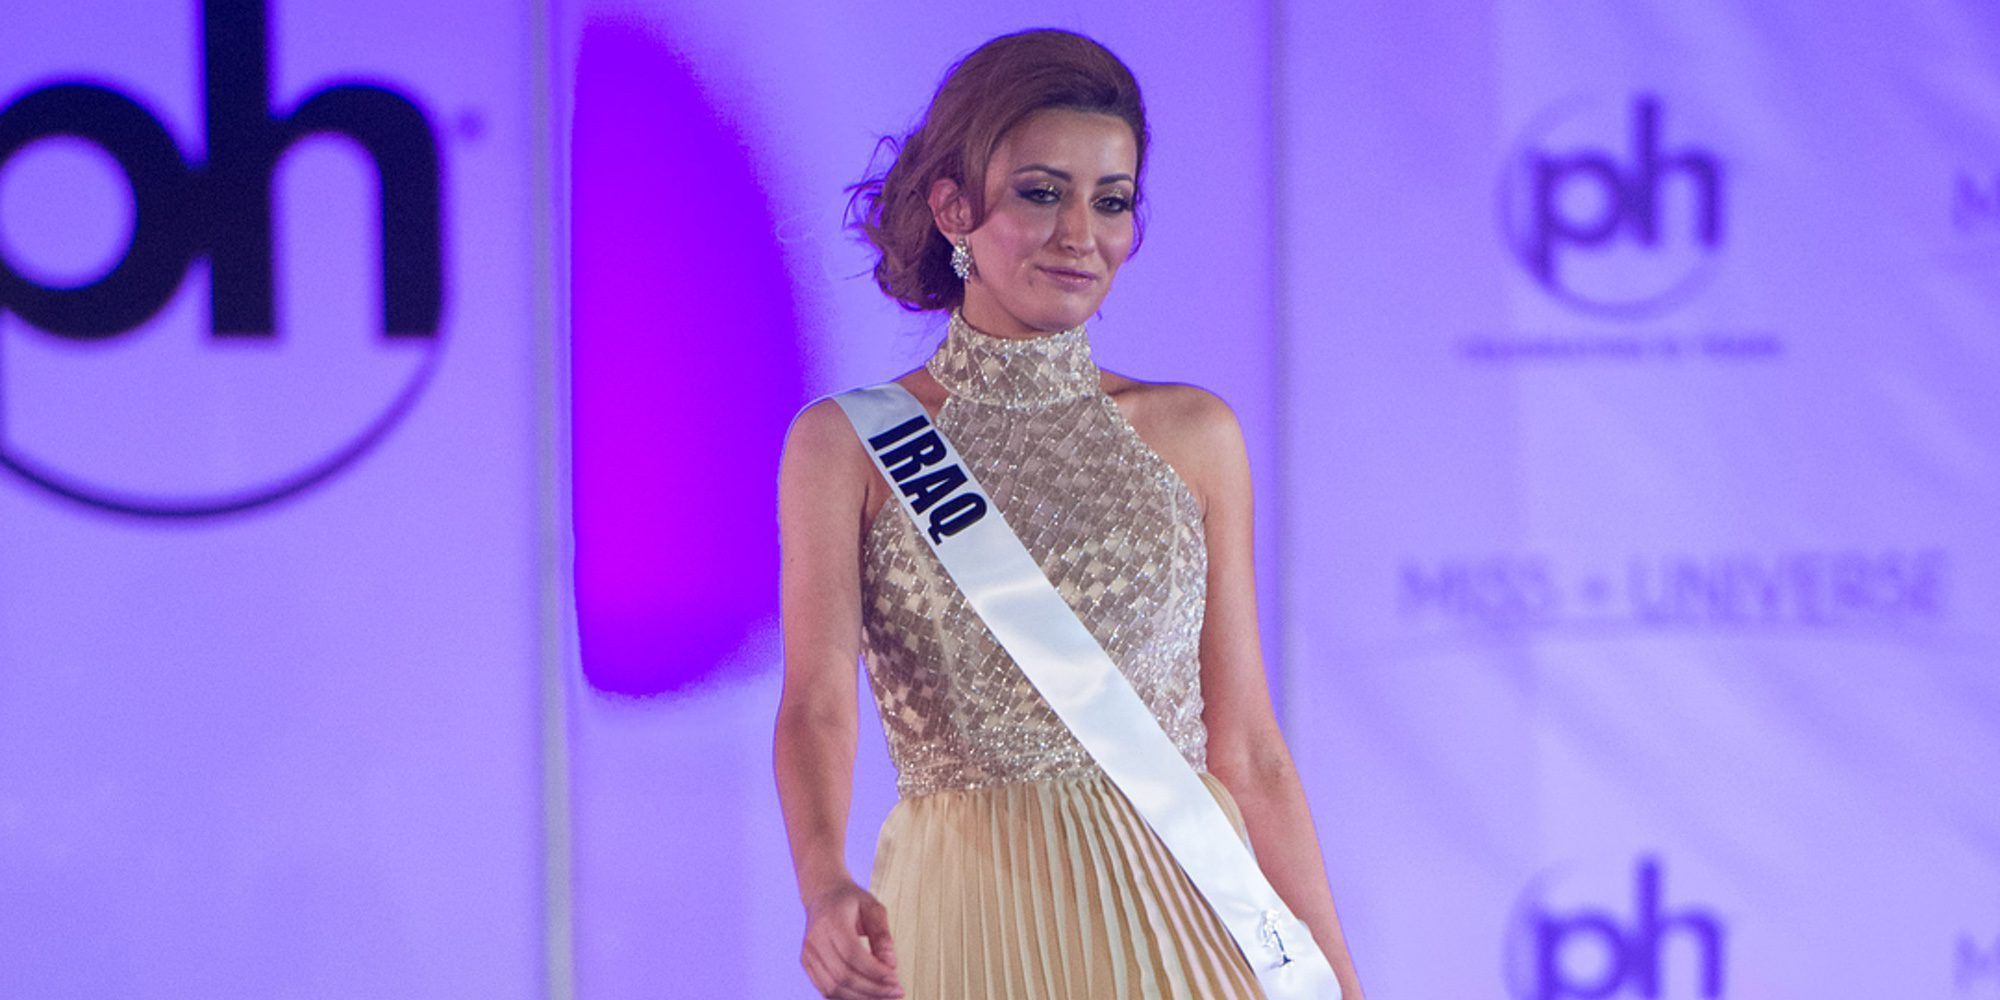 Miss Irak, exiliada después de posar con Miss Israel en una fotografía